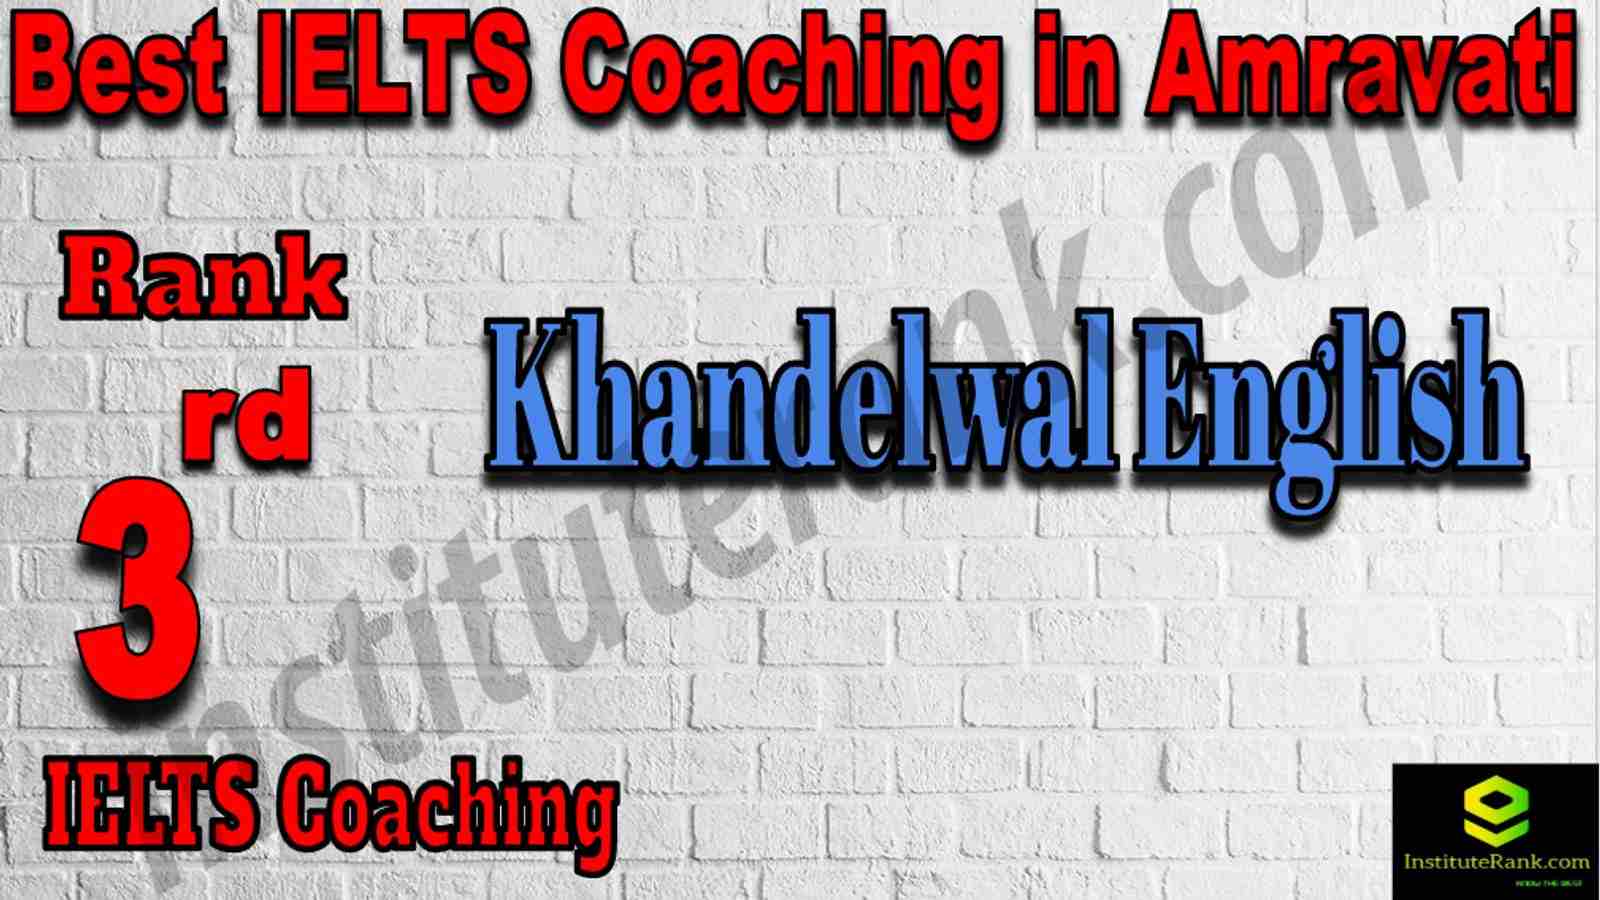 3rd Best IELTS Coaching in Amravati